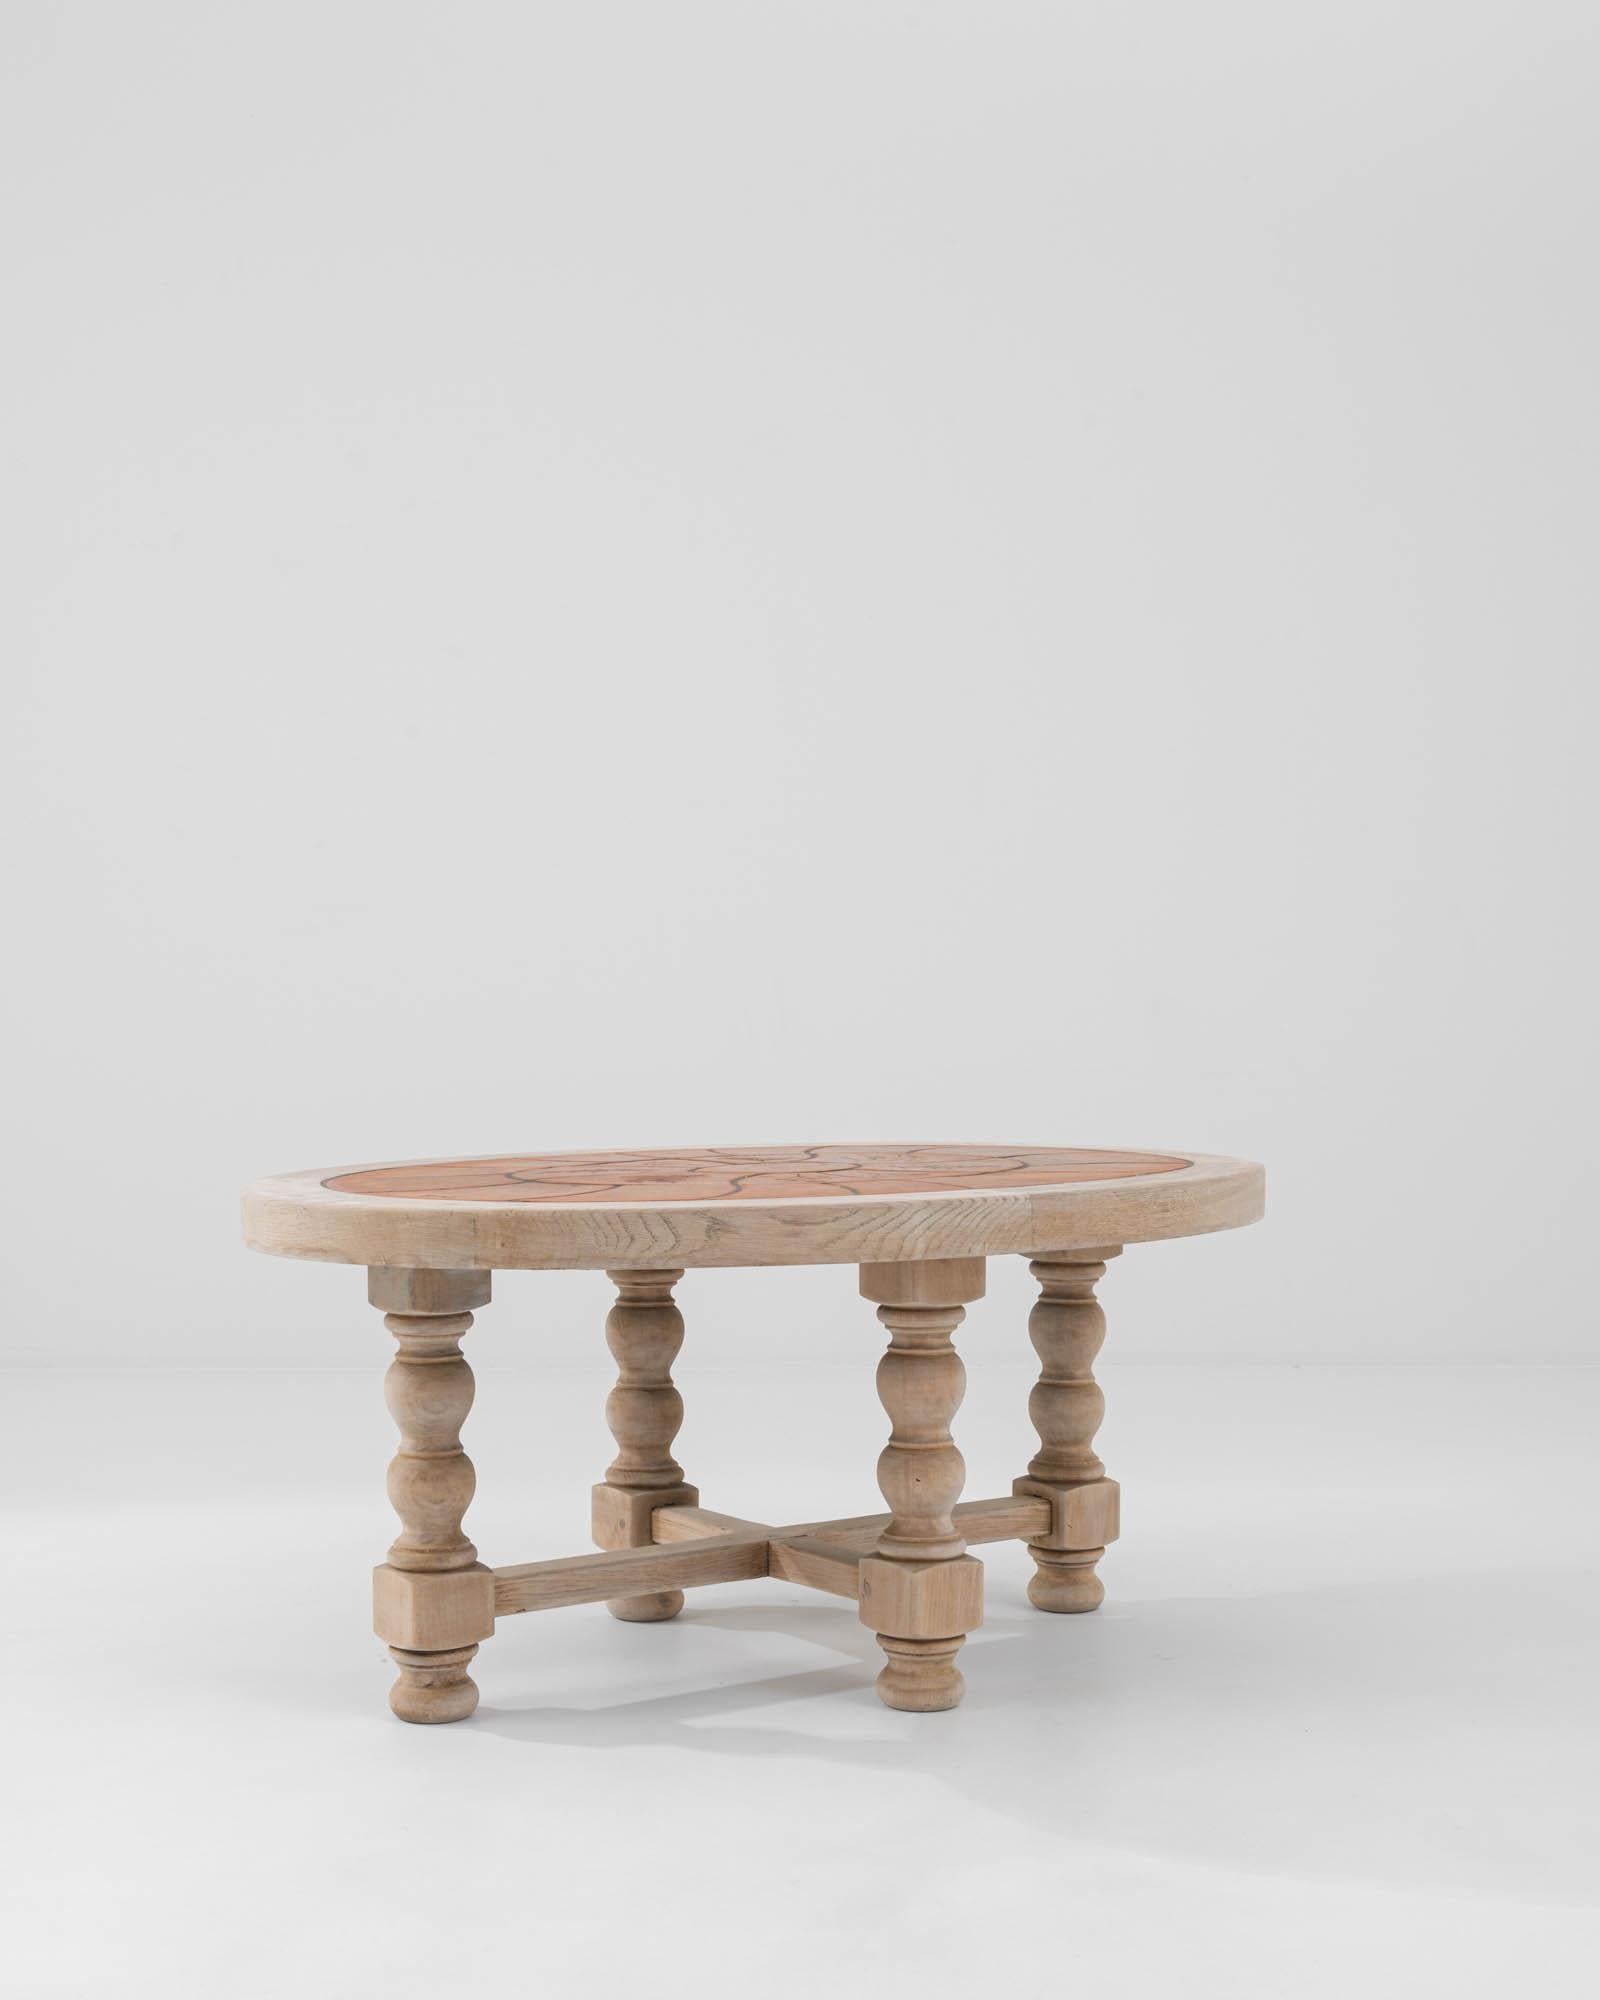 Ein Couchtisch aus Holz und Keramik aus dem Frankreich des 20. Jahrhunderts. Dieser verschnörkelte und verspielte Tisch strahlt Ruhe und Schönheit aus. Die Tischplatte besteht aus einem Muster formschöner Keramiktypen, die mit verschlungenen